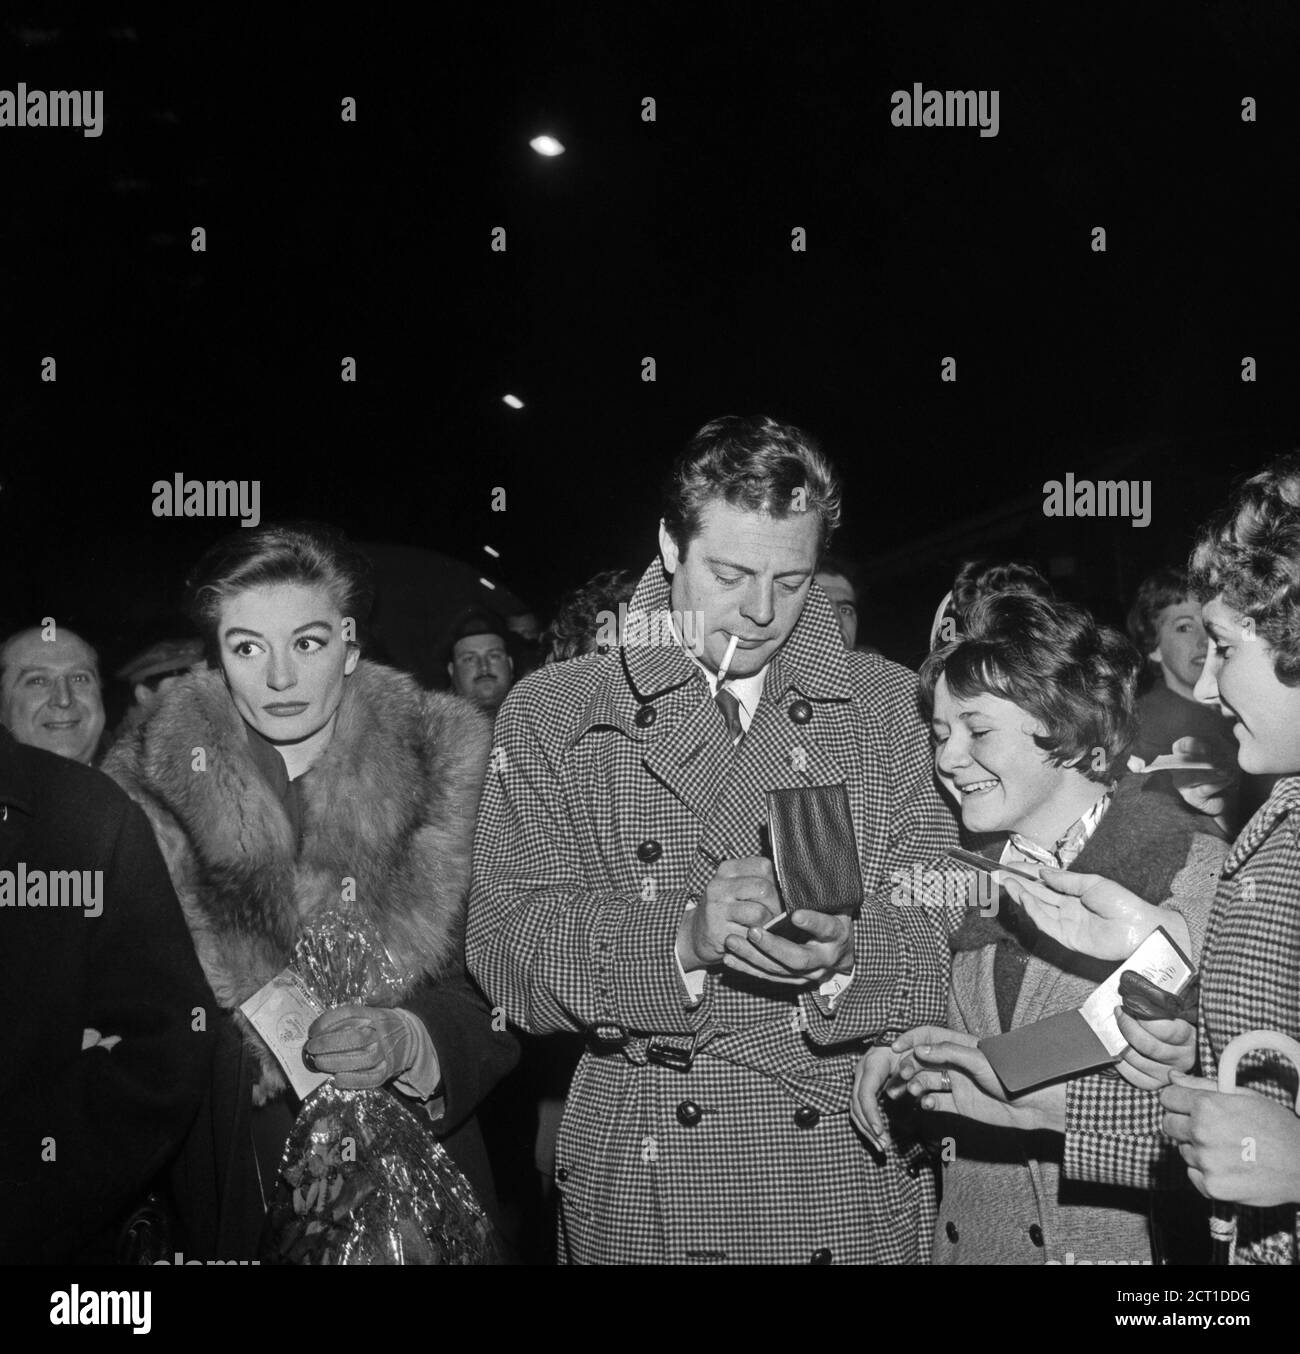 Anouk Aimée and Marcello Mastroianni attending the premiere of the movie 'La Dolce Vita' (Milan, february 1960). Stock Photo